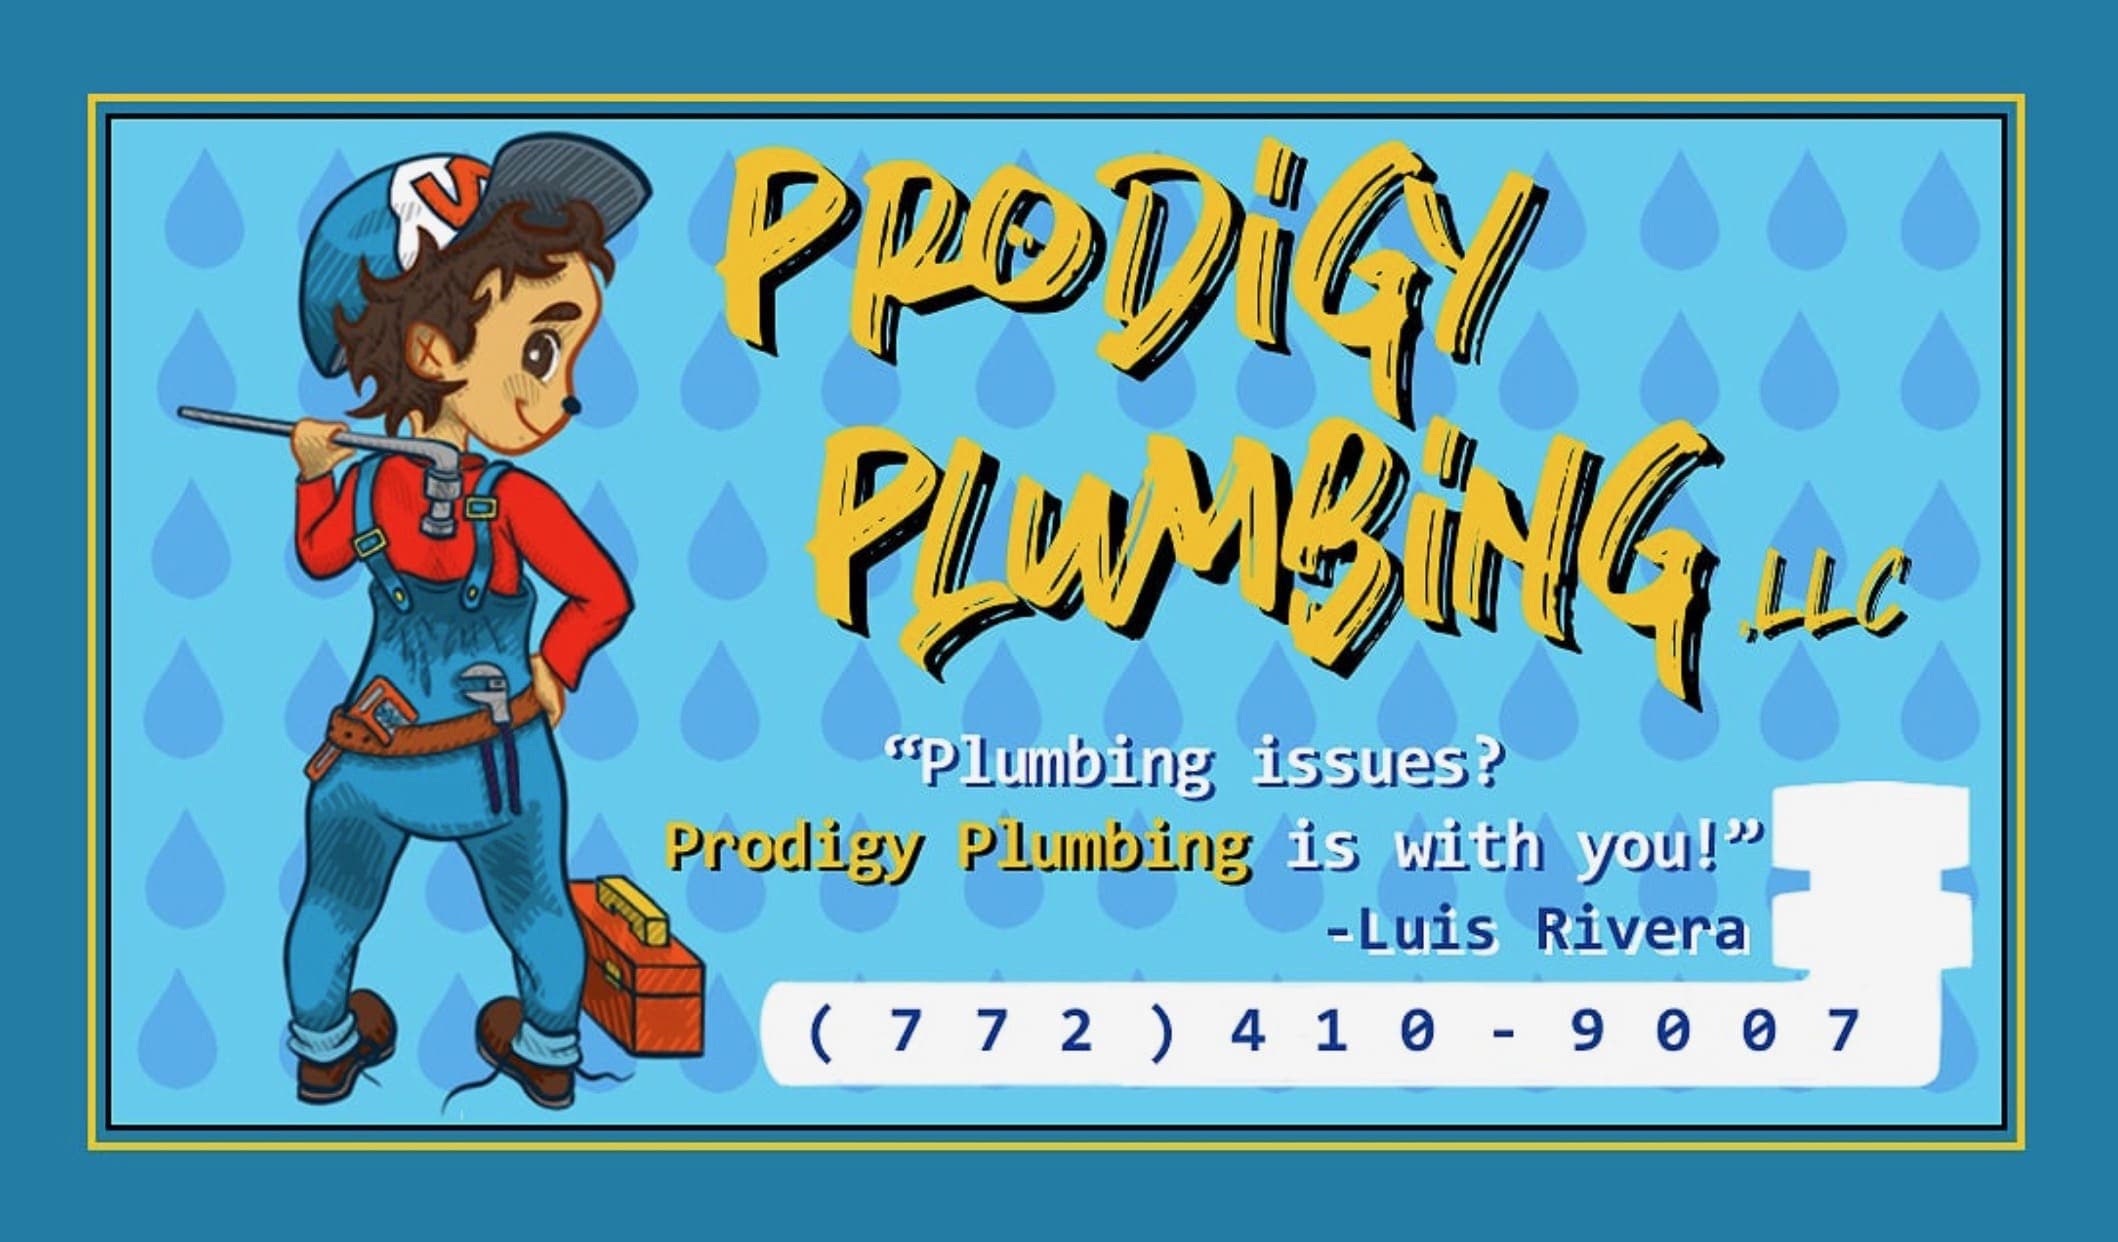 Prodigy Plumbing LLC